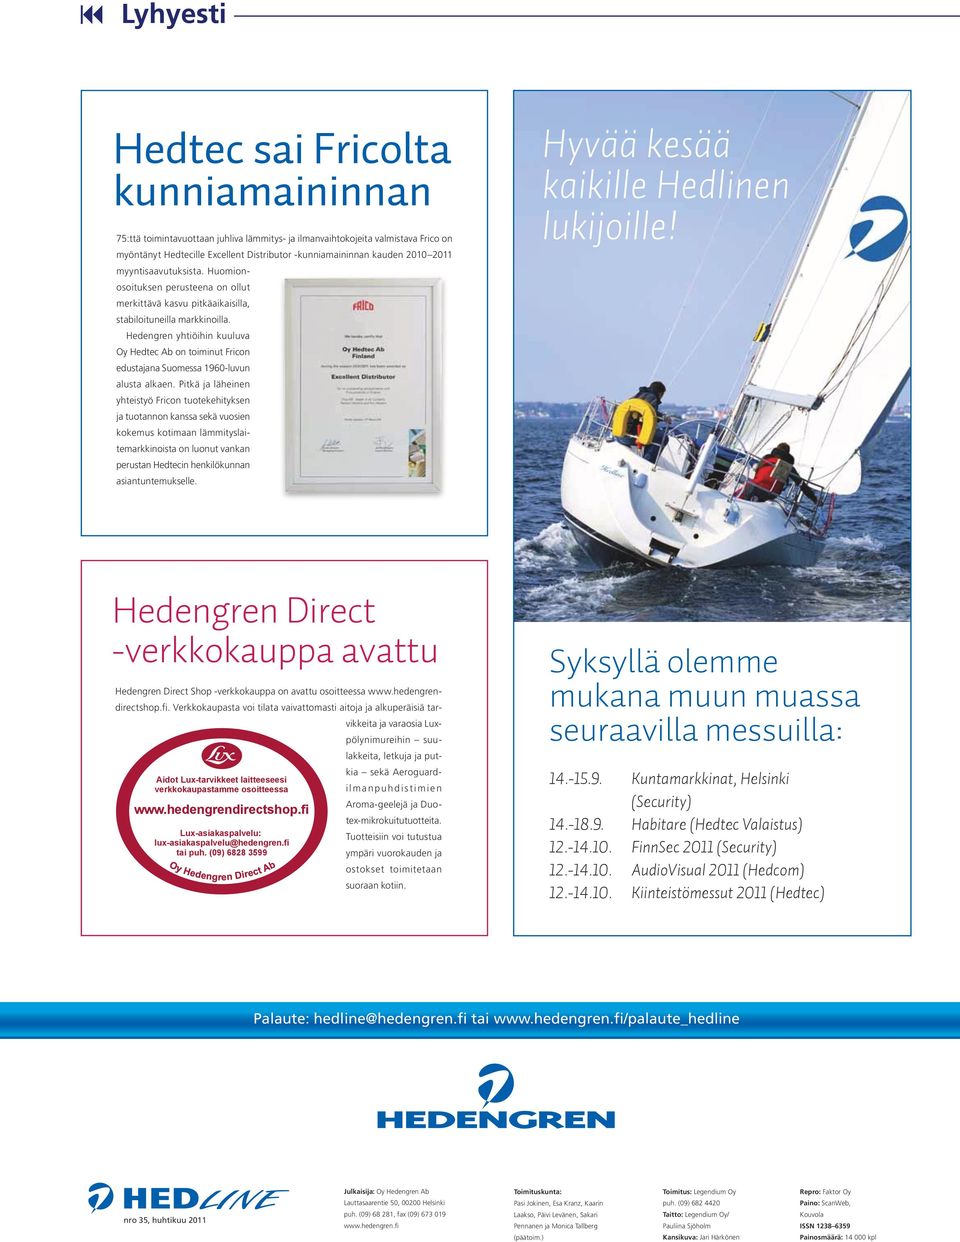 Hedengren yhtiöihin kuuluva Oy Hedtec Ab on toiminut Fricon edustajana Suomessa 1960-luvun alusta alkaen.